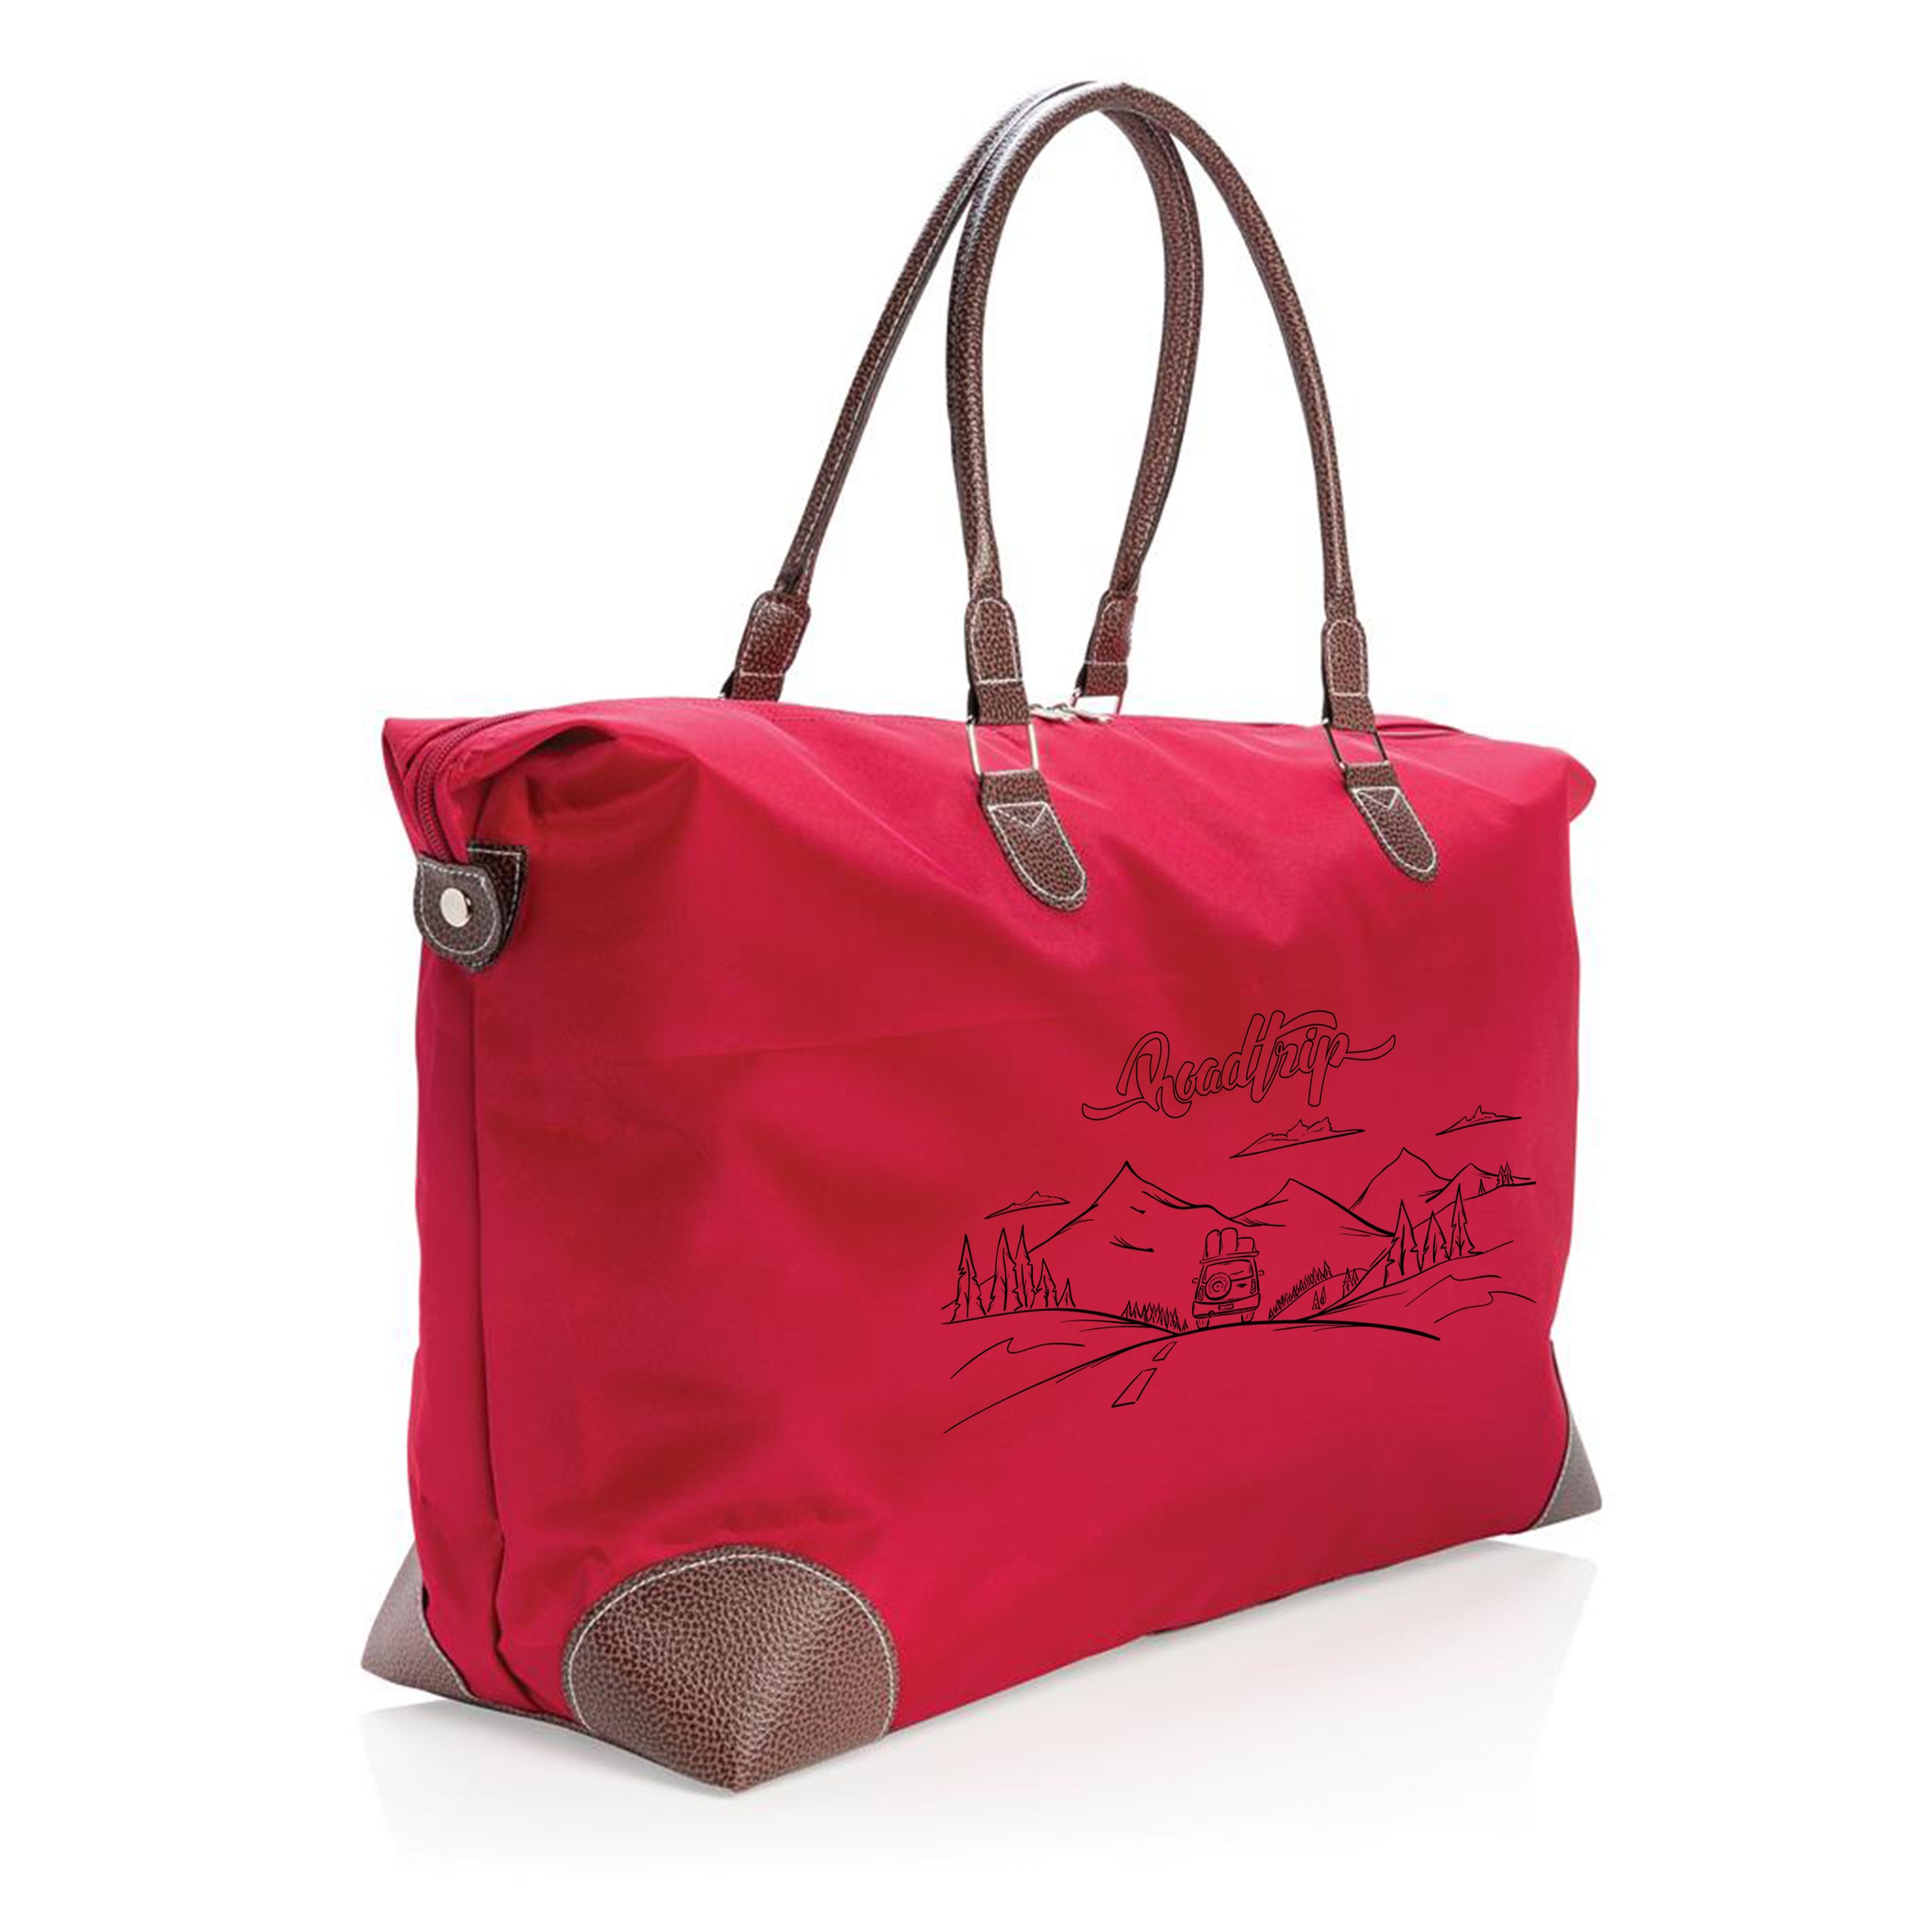 Reisetasche bedrucken mit braunen Henkeln - Beirut